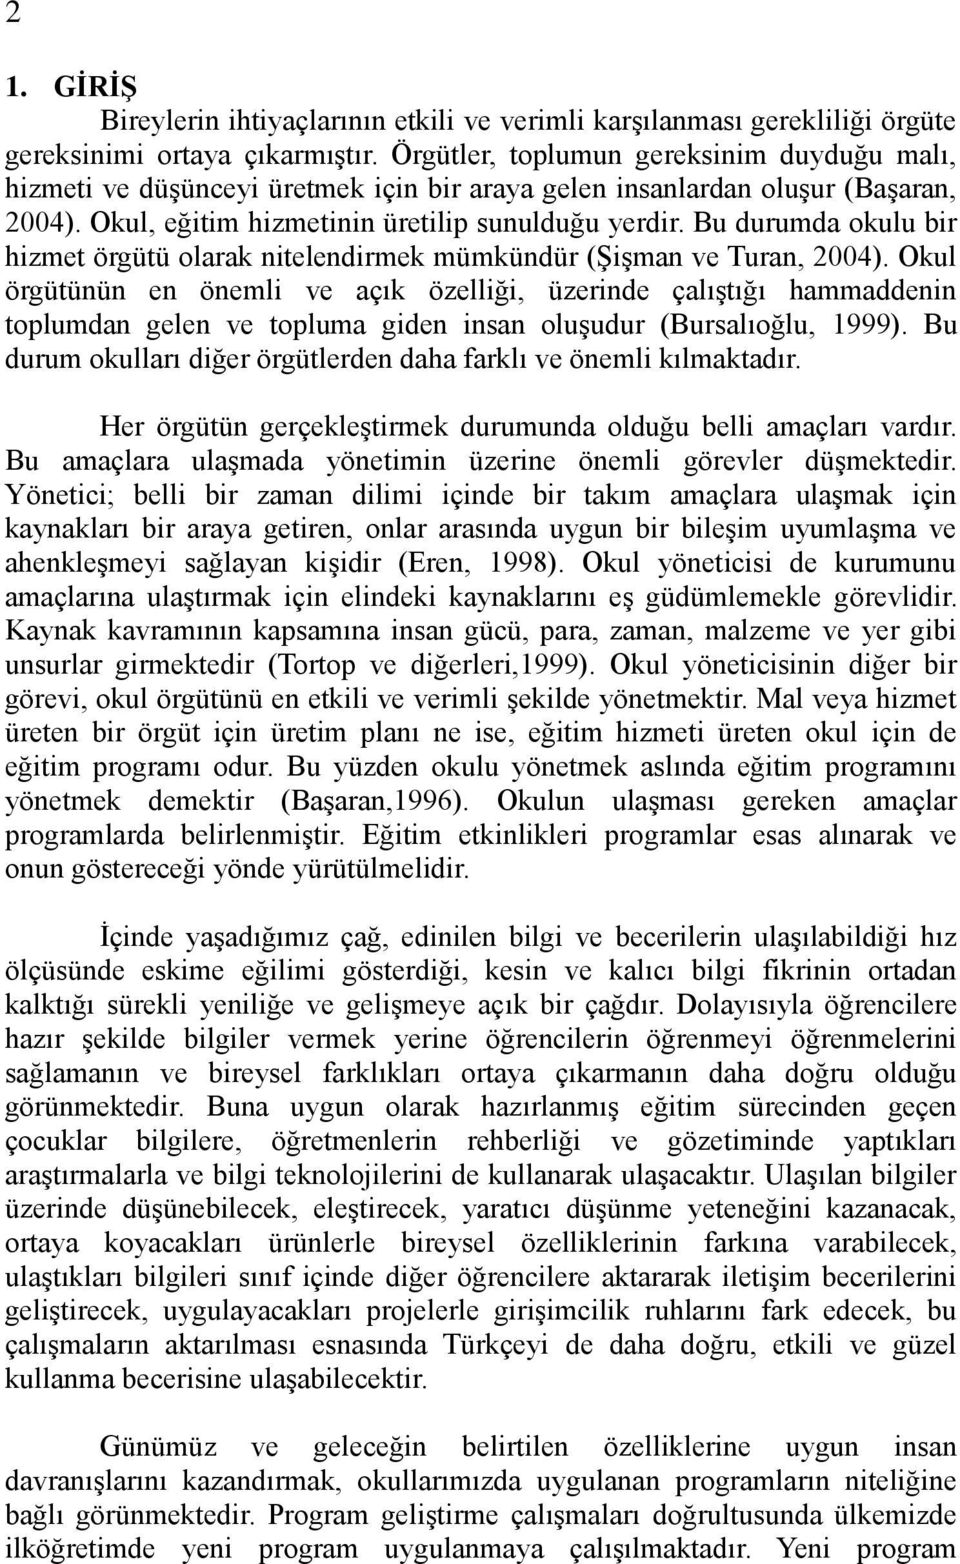 Bu durumda okulu bir hizmet örgütü olarak nitelendirmek mümkündür (ġiģman ve Turan, 2004).